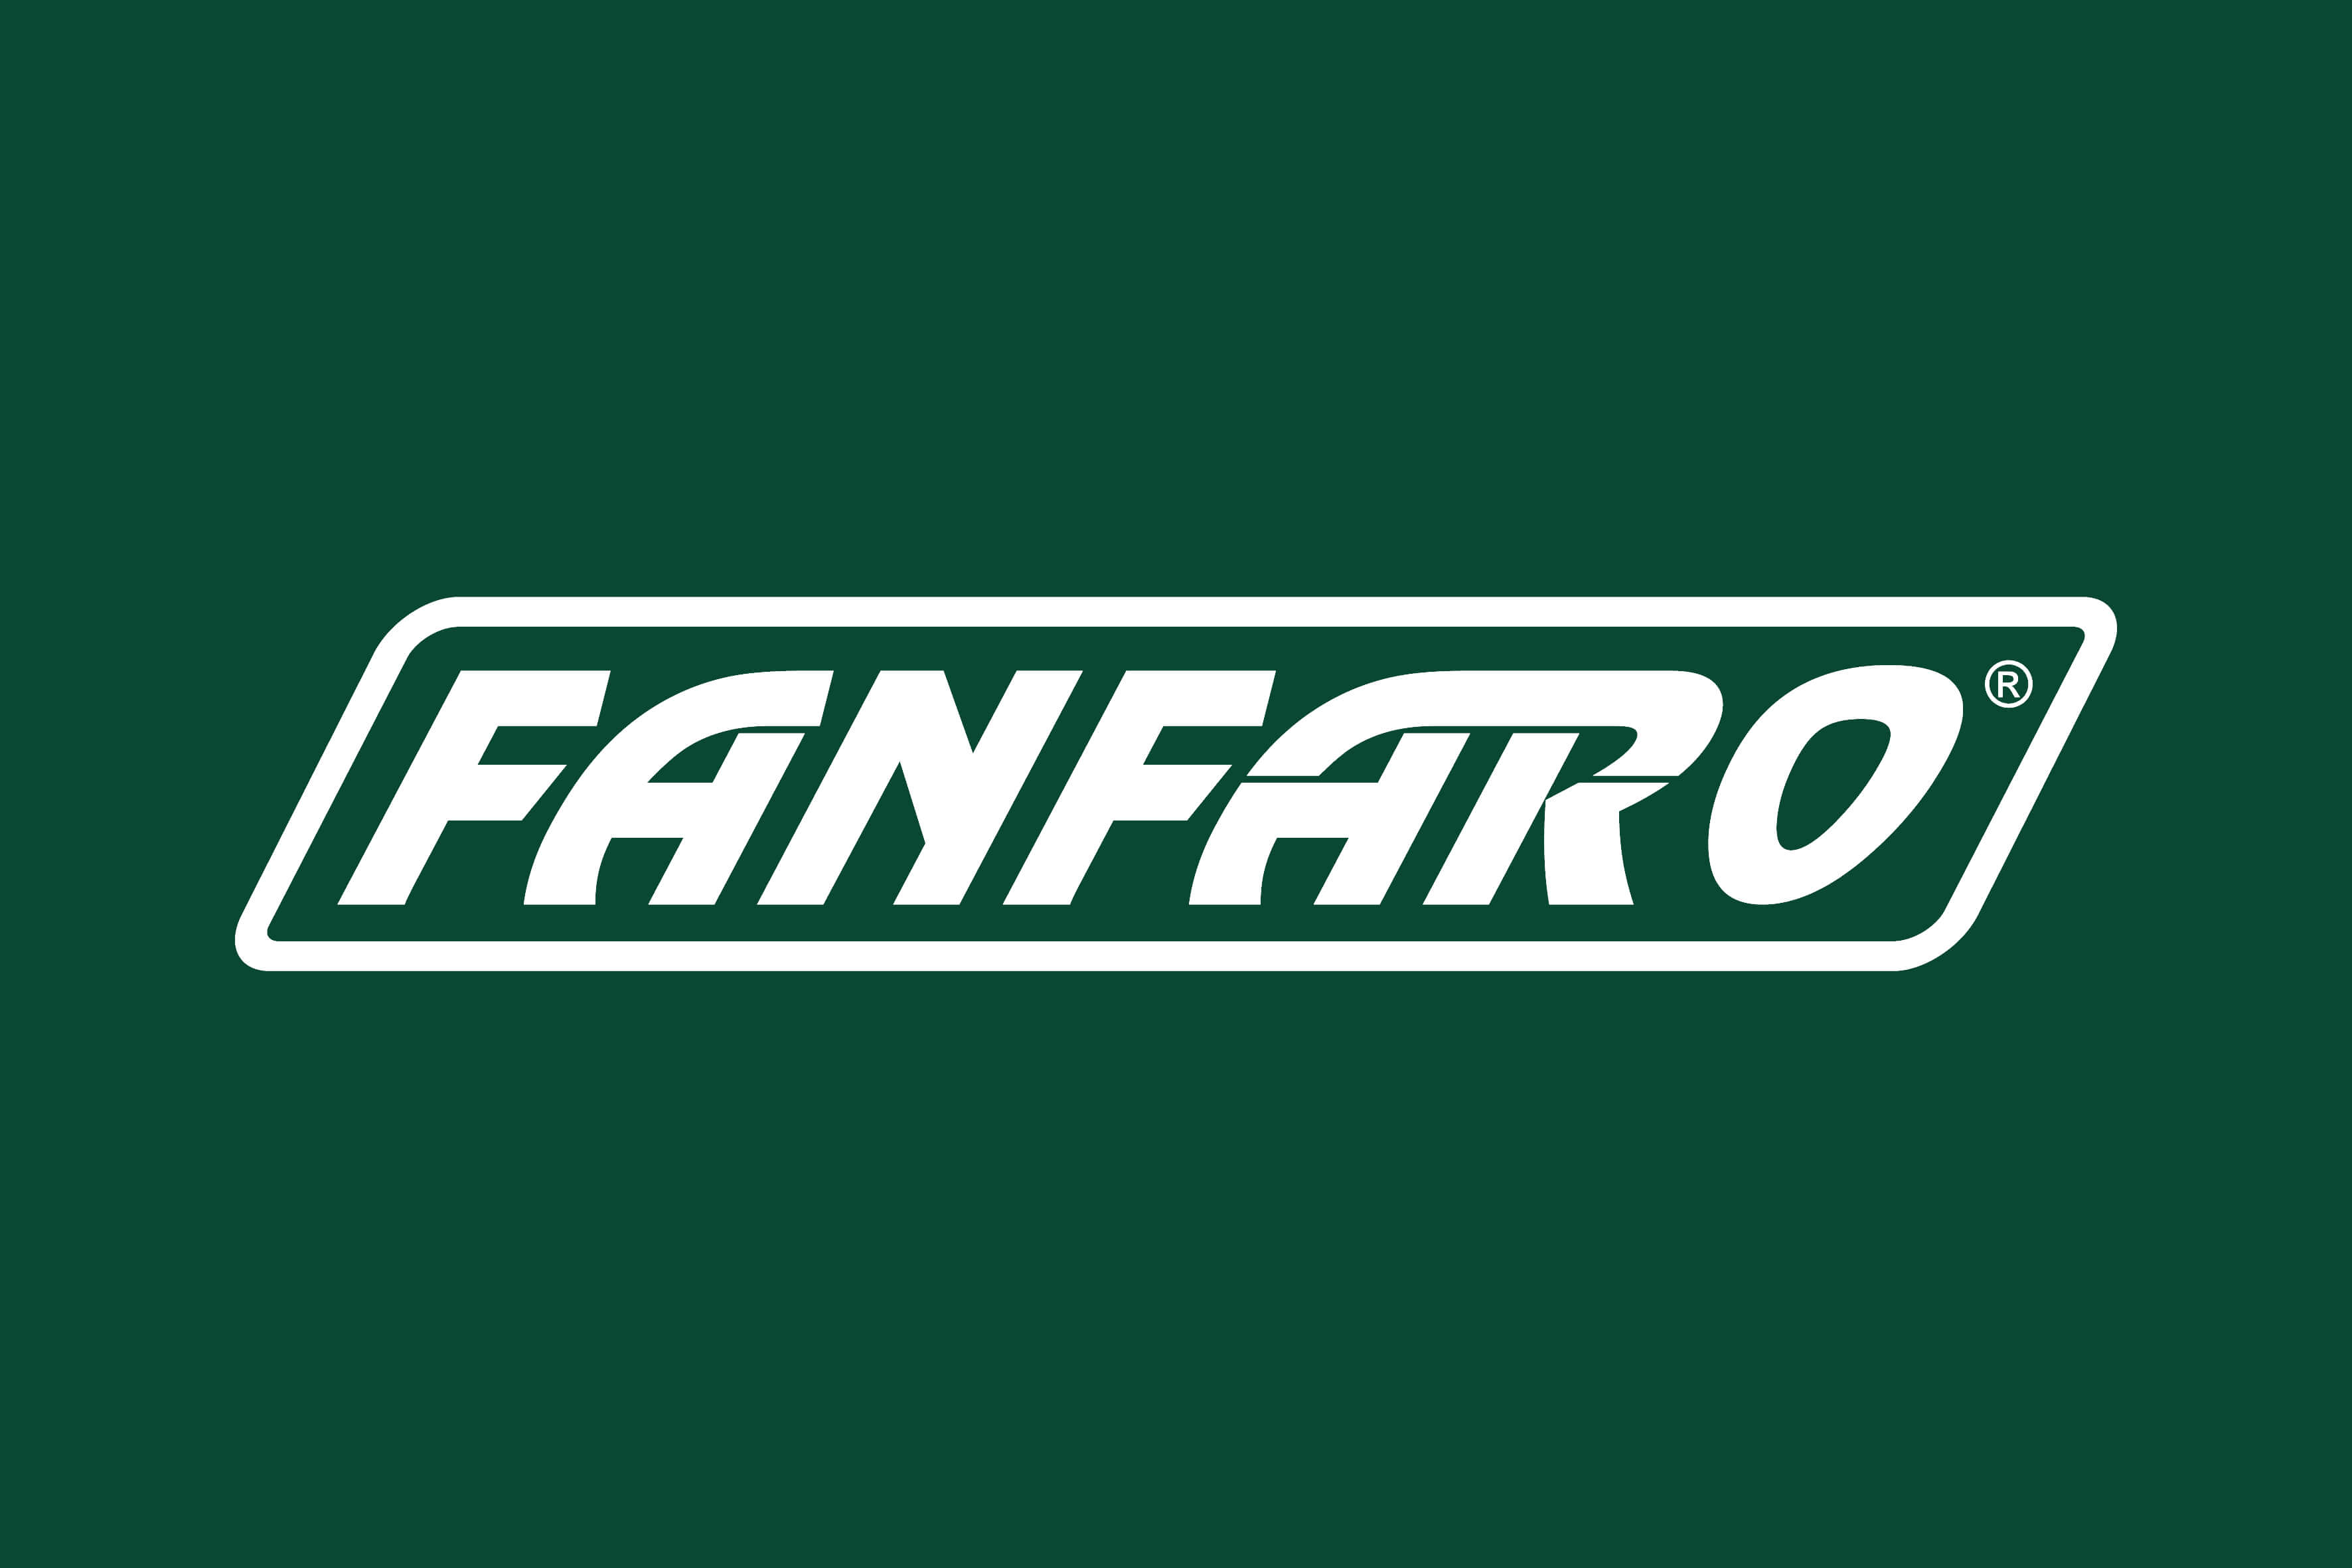 logotyp firmy Fanfaro